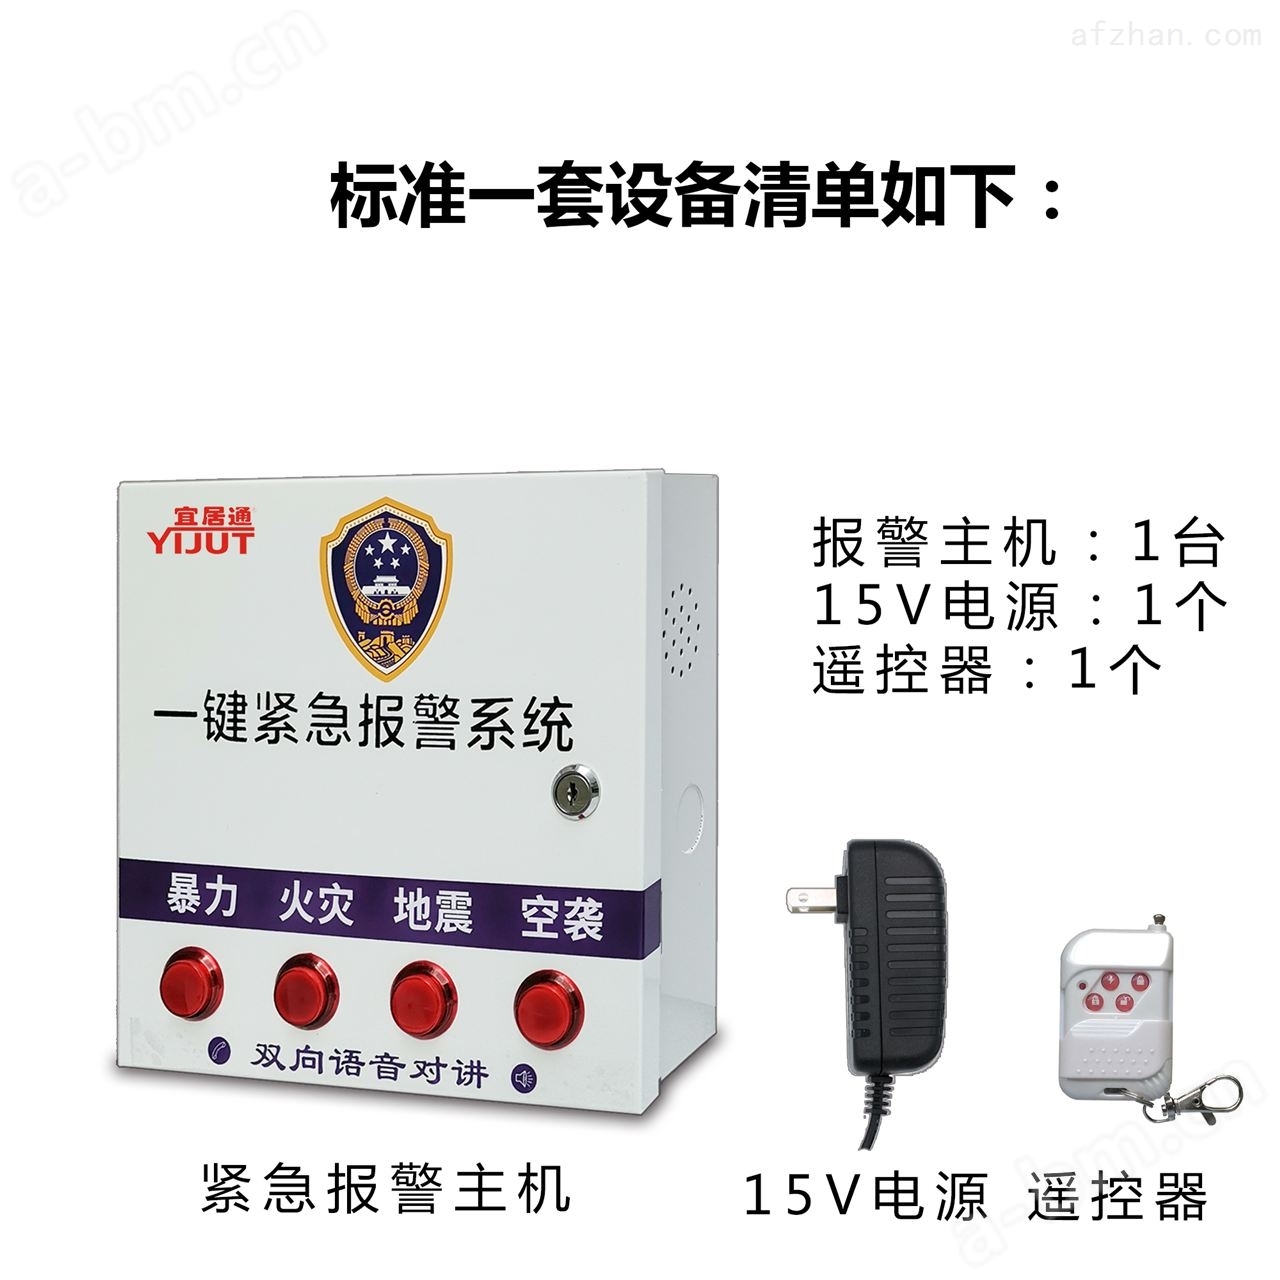 国产GSM紧急报警主机生产